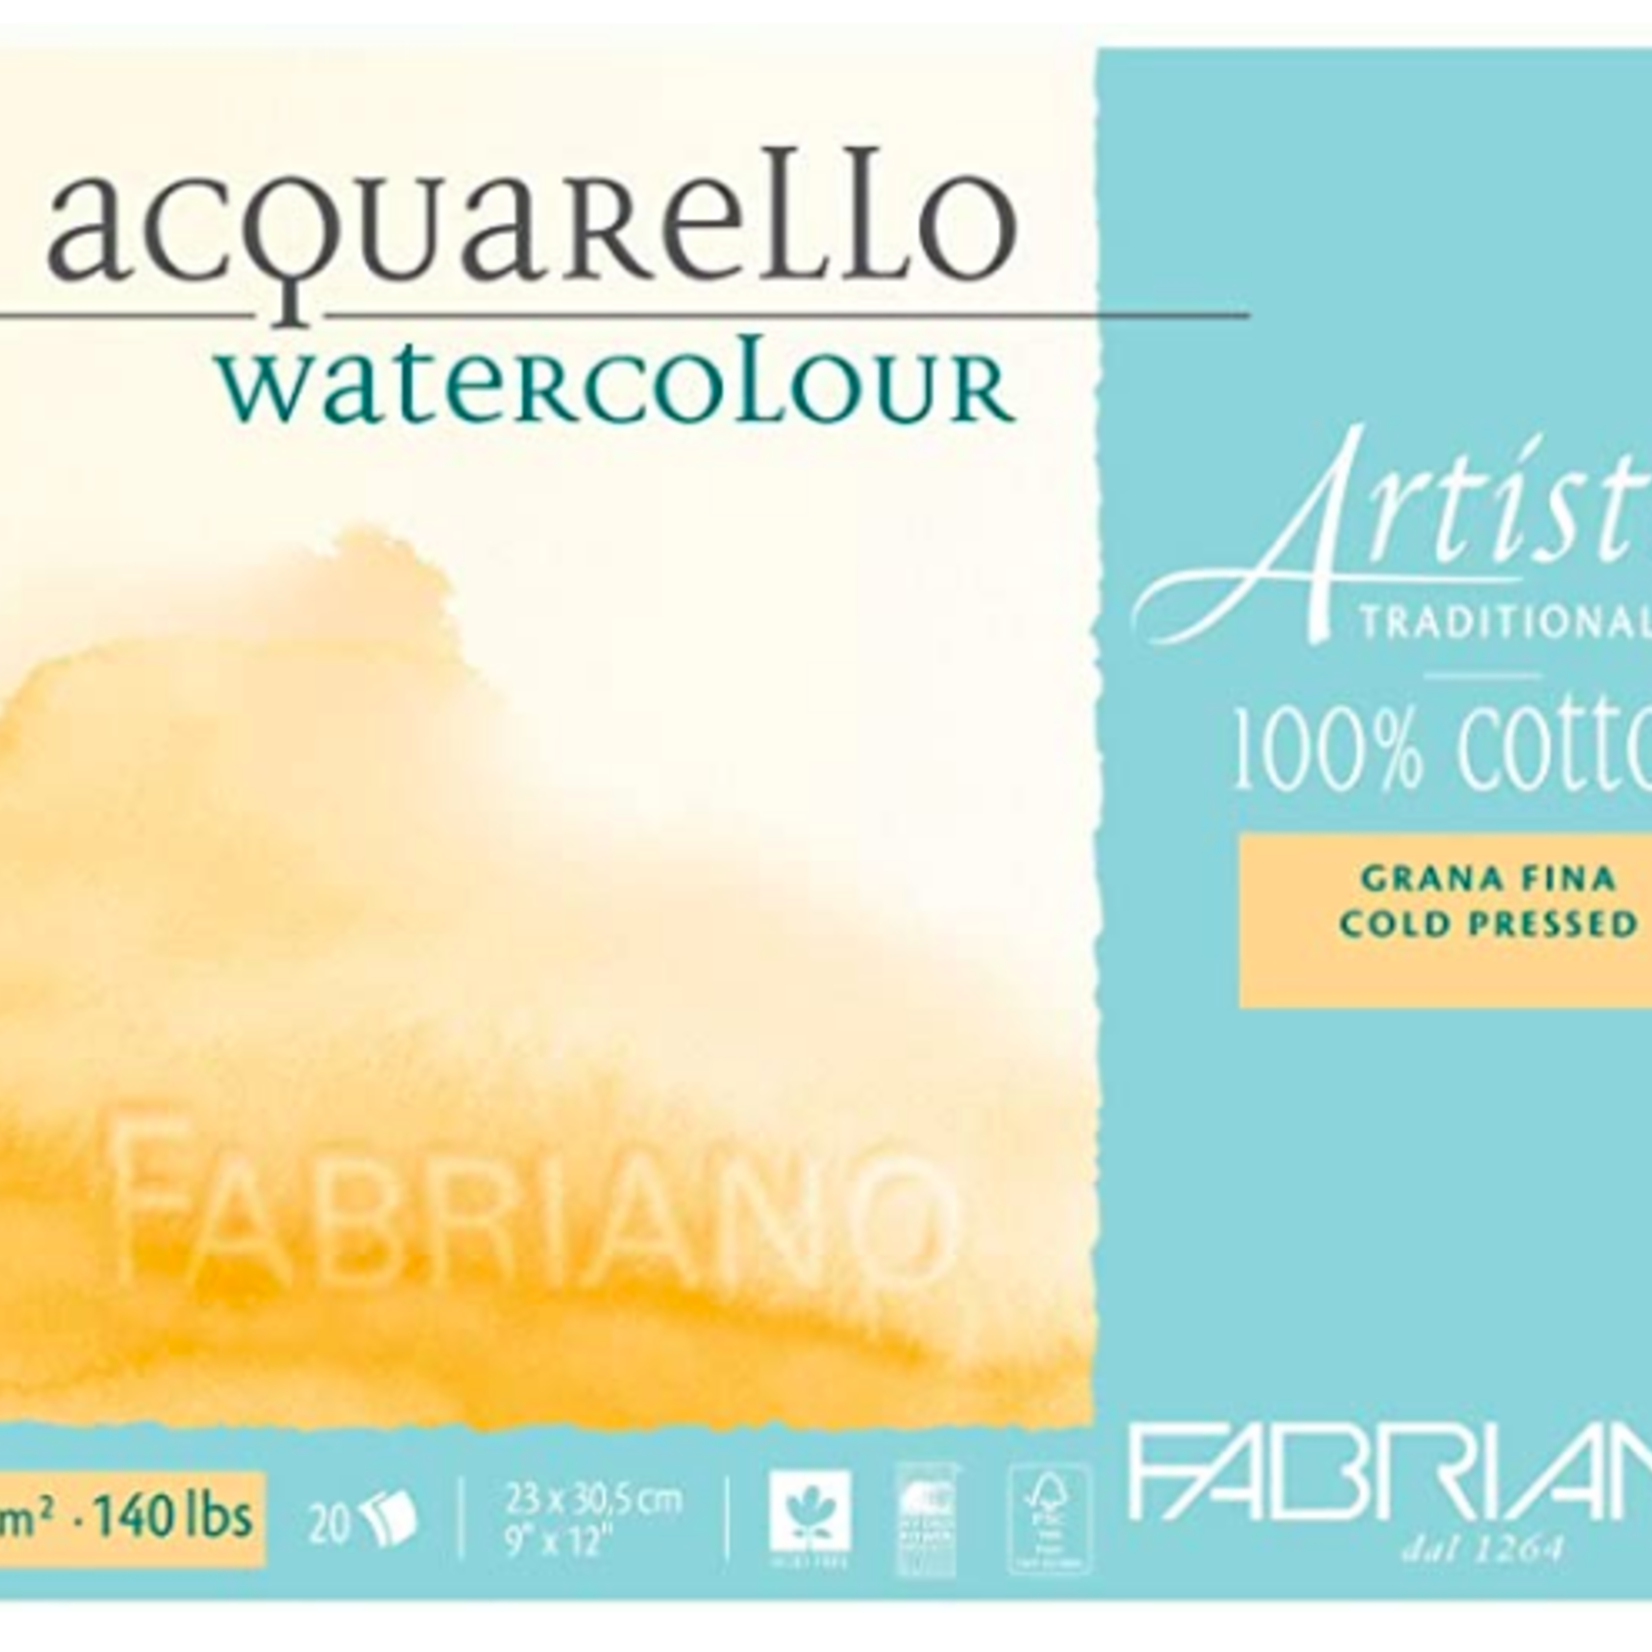 FABRIANO ARTISTICO WATERCOLOUR BLOCK 140LB COLD PRESS 5X7 25/SHEETS TRADITIONAL WHITE